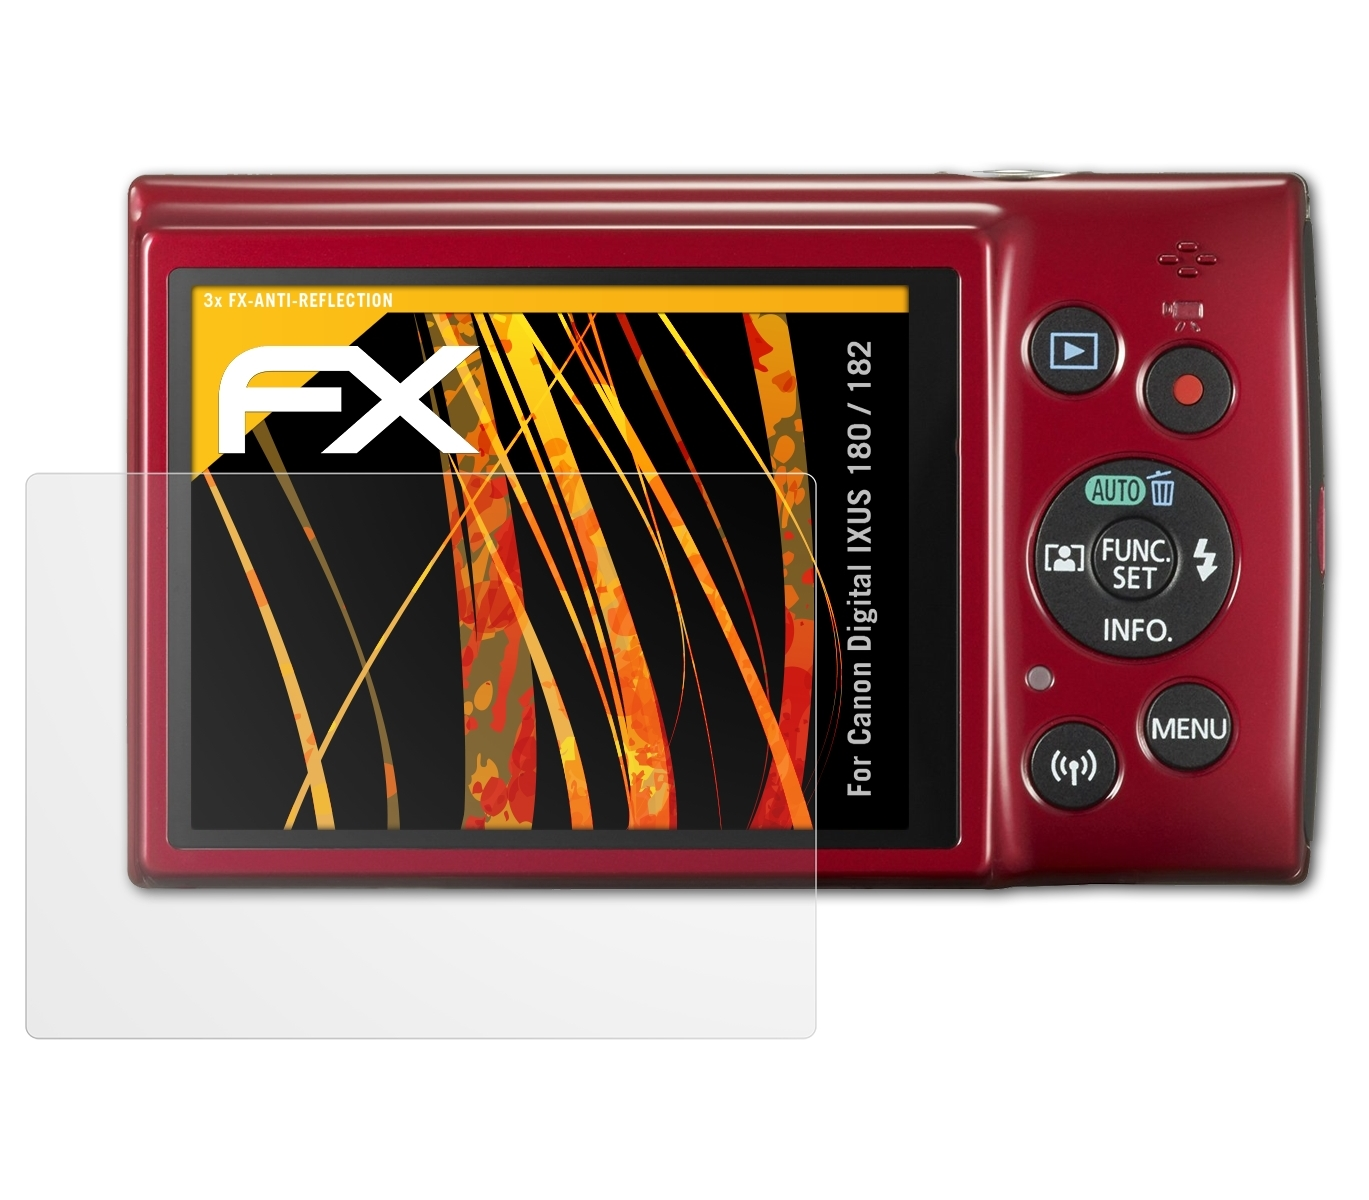 Digital IXUS FX-Antireflex 3x Displayschutz(für 180 / ATFOLIX 182) Canon